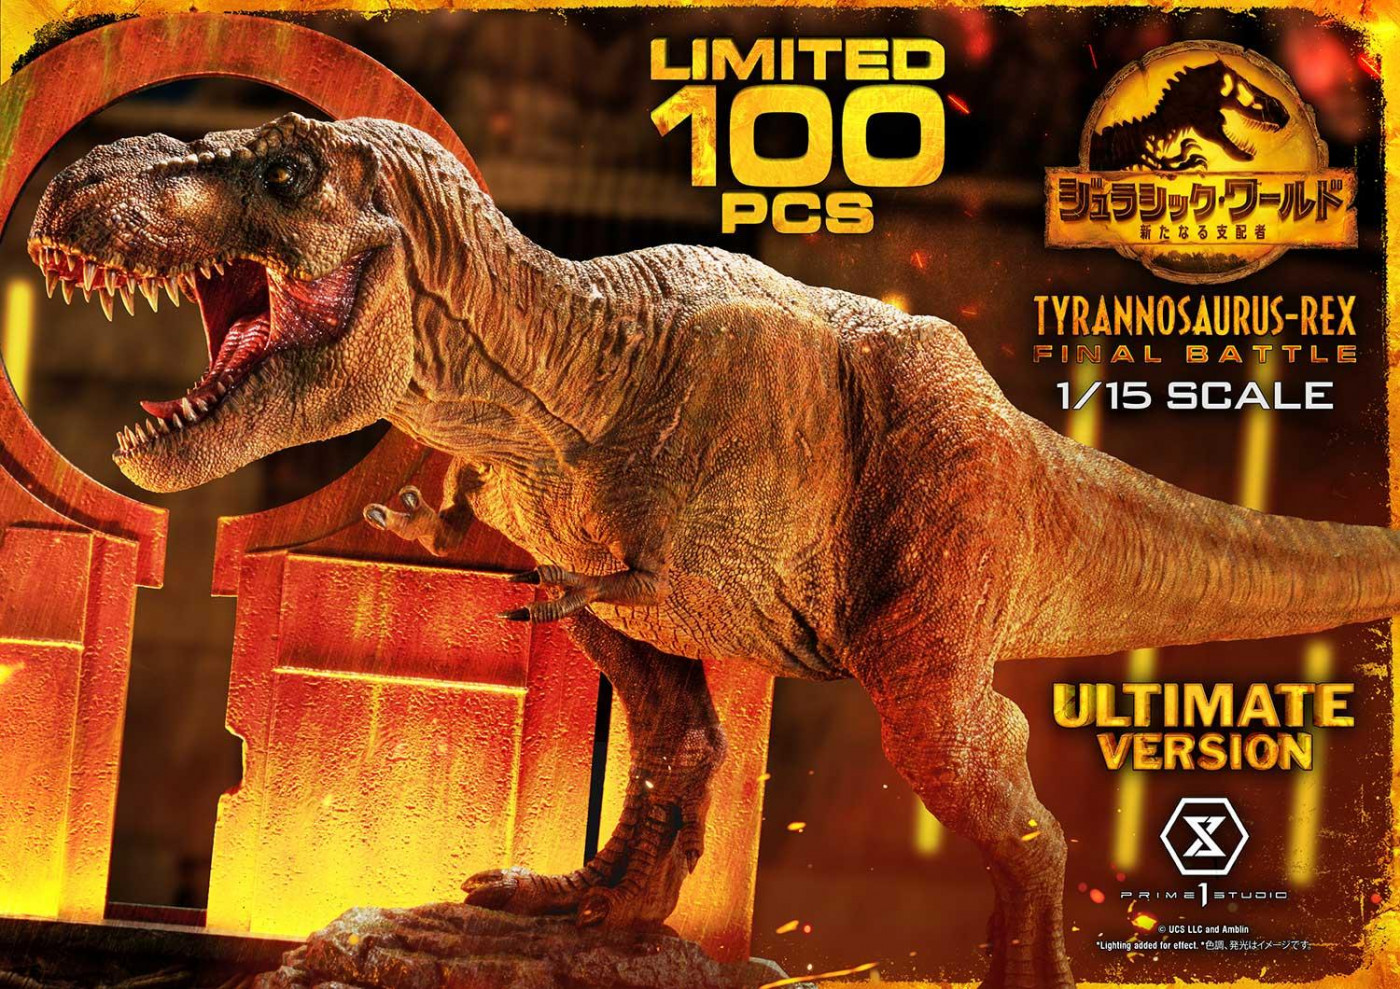 ジュラシック・ワールド プライム1スタジオ ティラノサウルス-